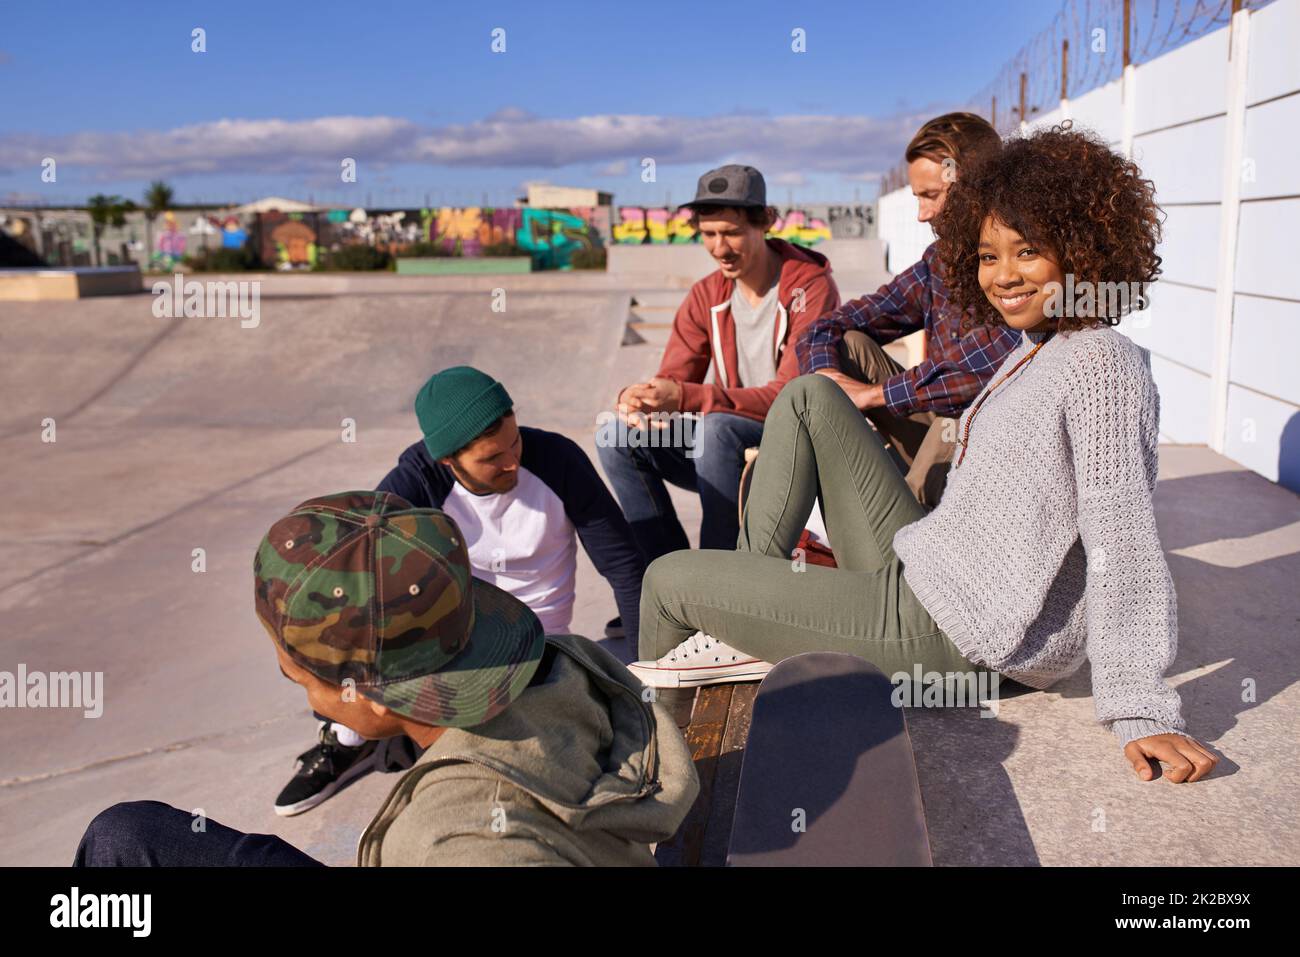 Socializzazione allo skatepark. Foto di un gruppo di amici che si socializzano allo skatepark. Foto Stock